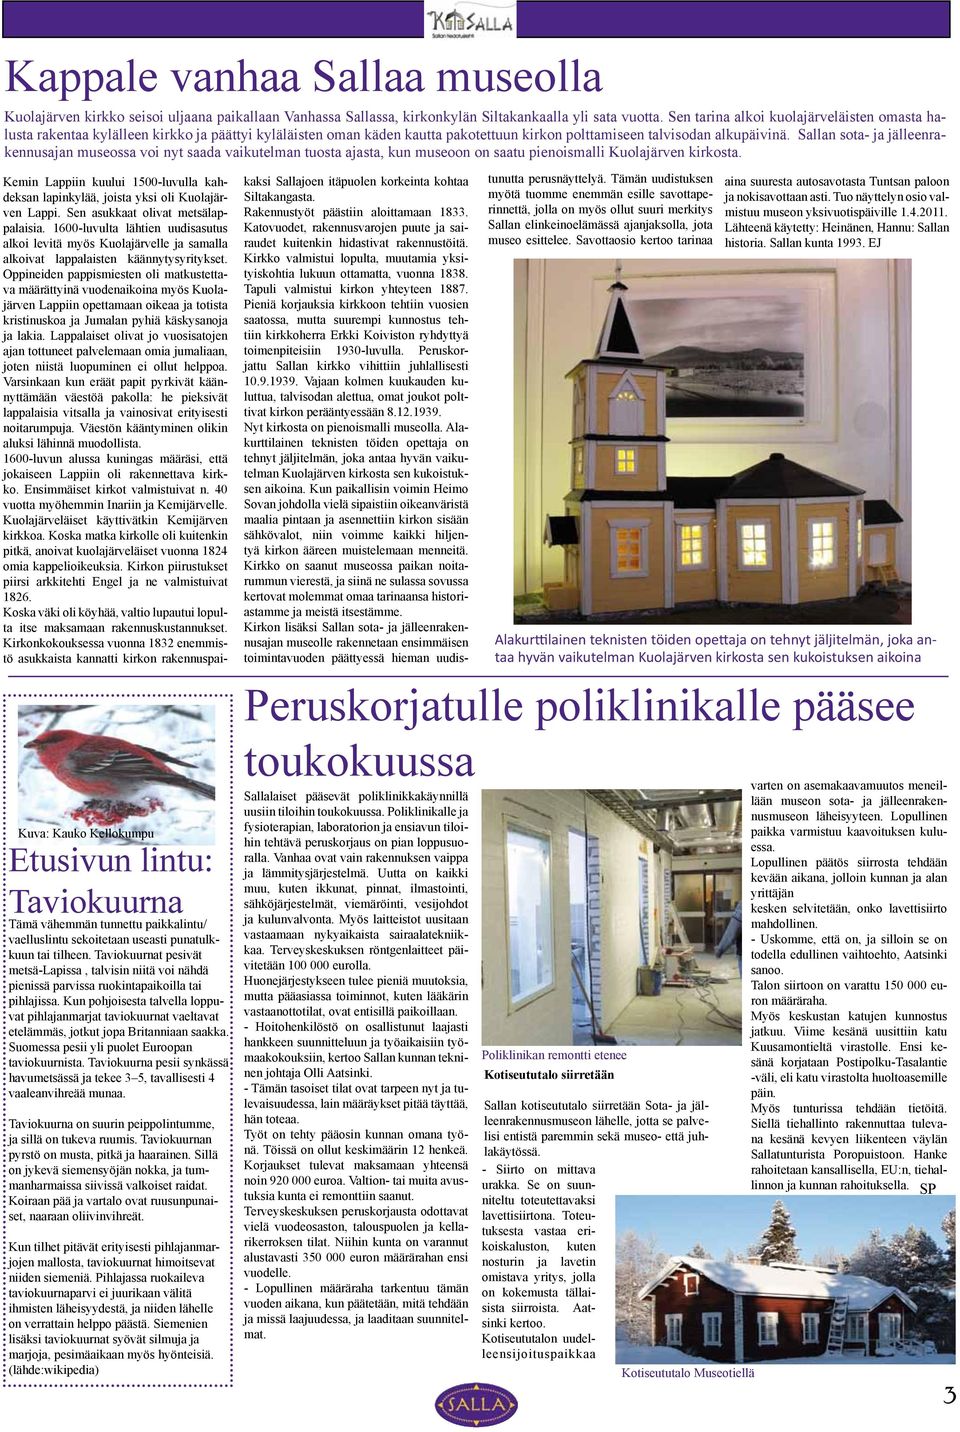 Sallan sota- ja jälleenrakennusajan museossa voi nyt saada vaikutelman tuosta ajasta, kun museoon on saatu pienoismalli Kuolajärven kirkosta.